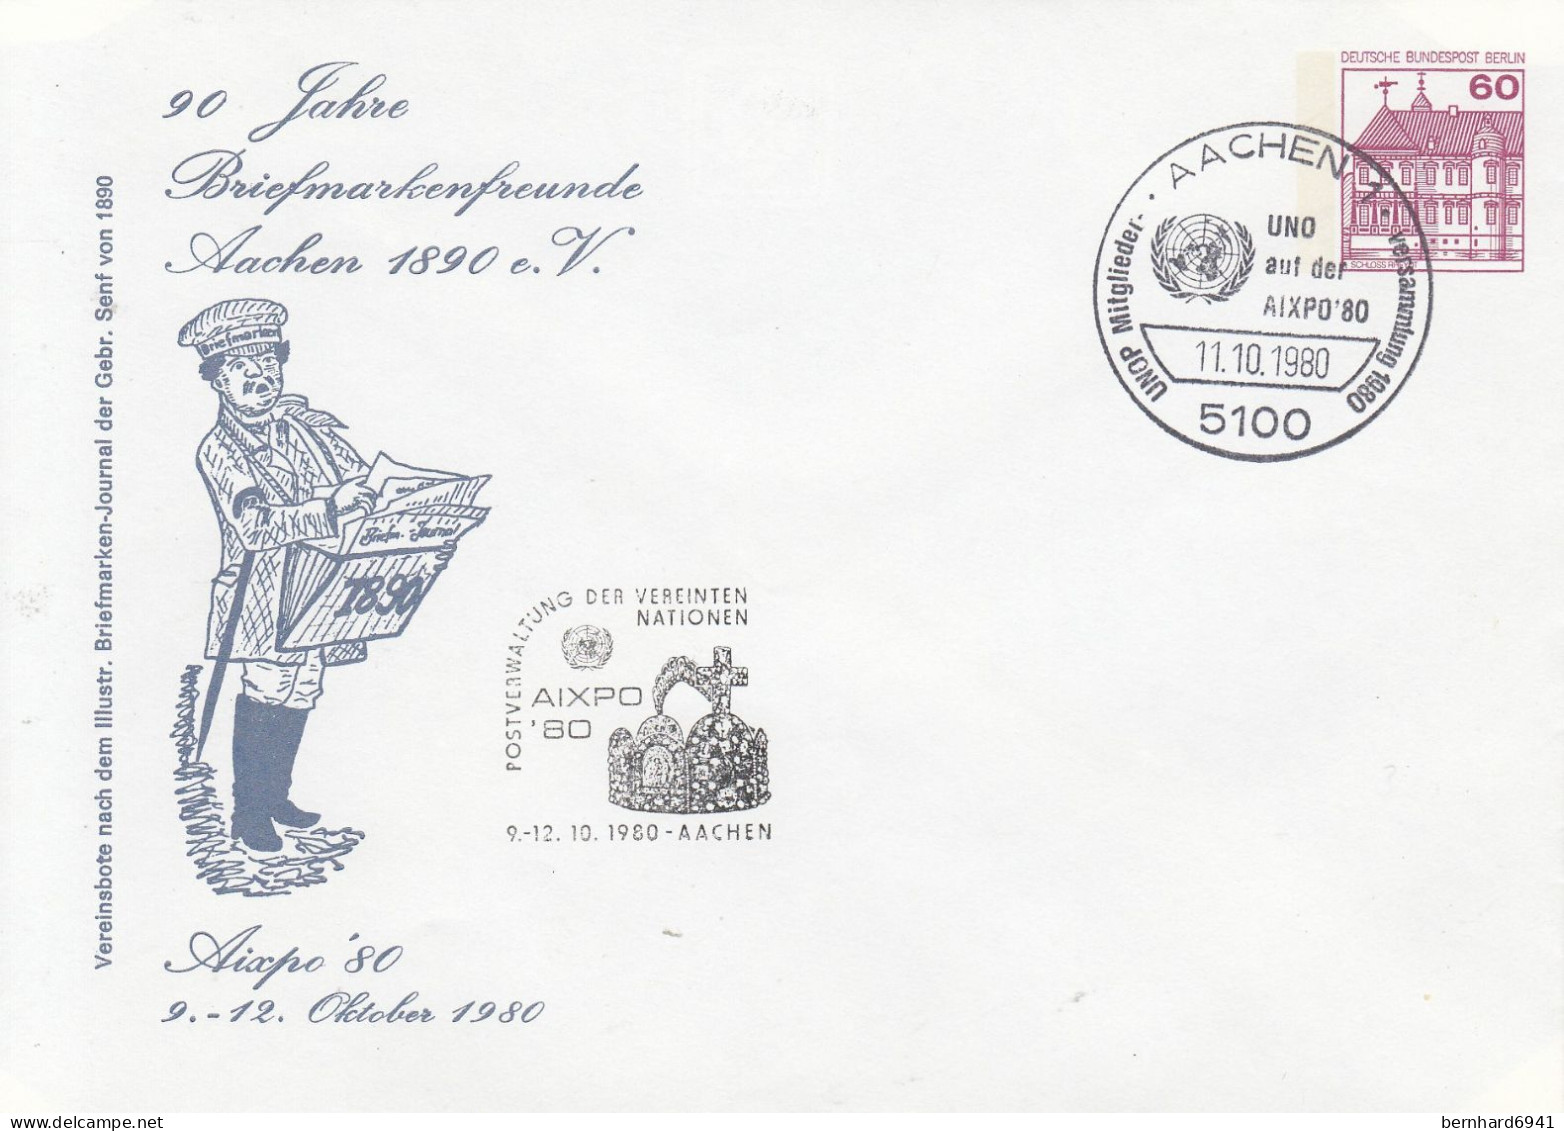 B PU 75/8 90 Jahre Briefmarkenfreunde Aachen 1890 E.V. -Aixpo`80 9.-12. Oktober 1980, Aachen 1 - Privatumschläge - Gebraucht